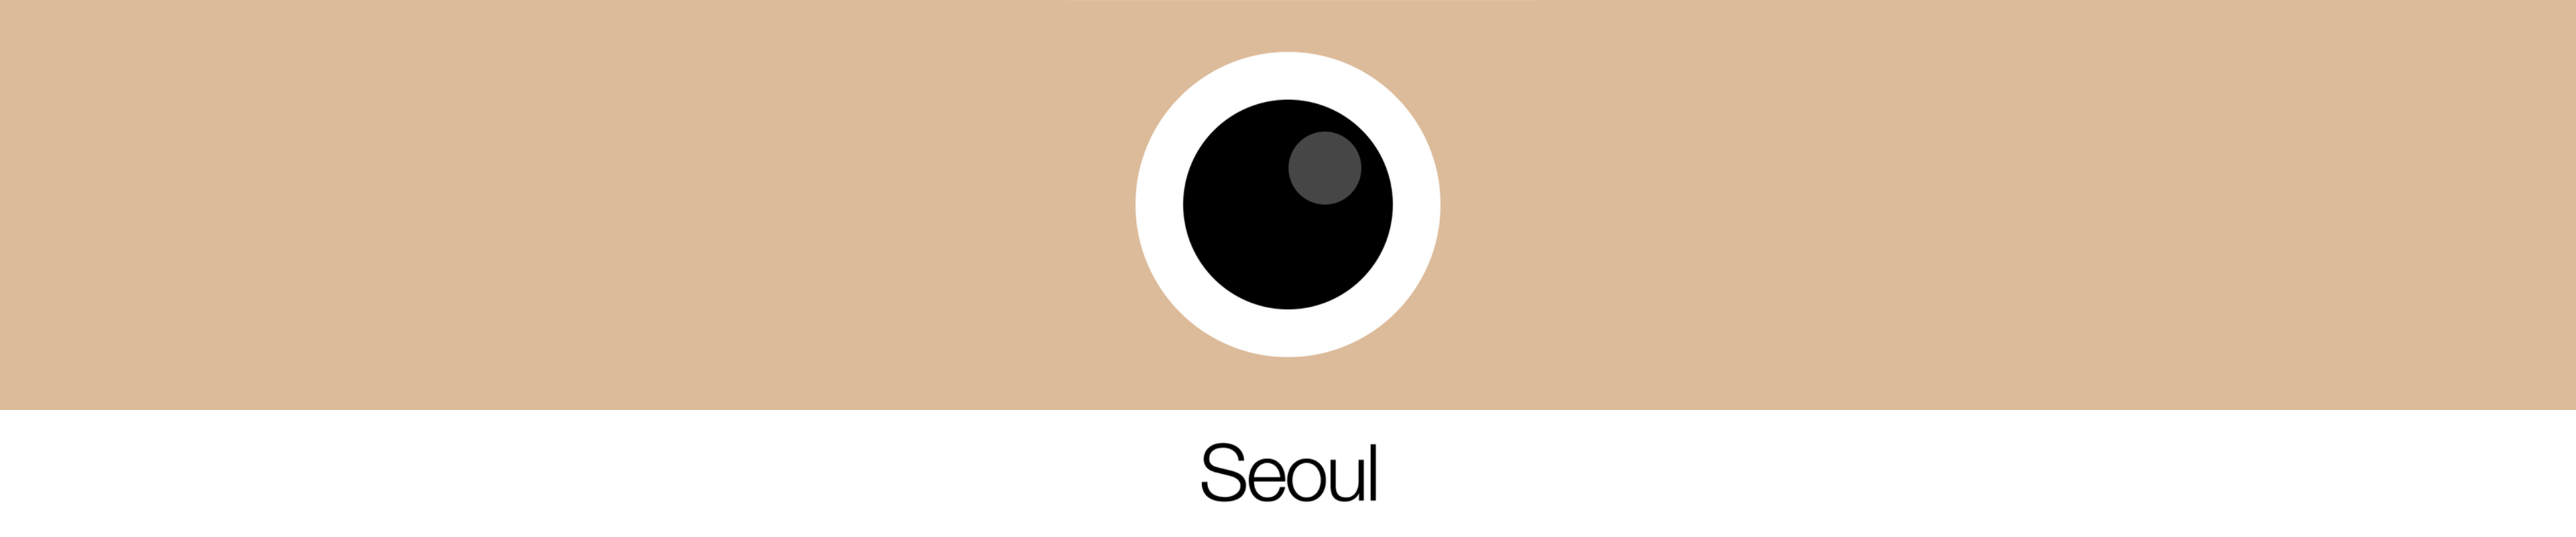 [已购]Analog Seoul (模拟首尔)-草蜢资源